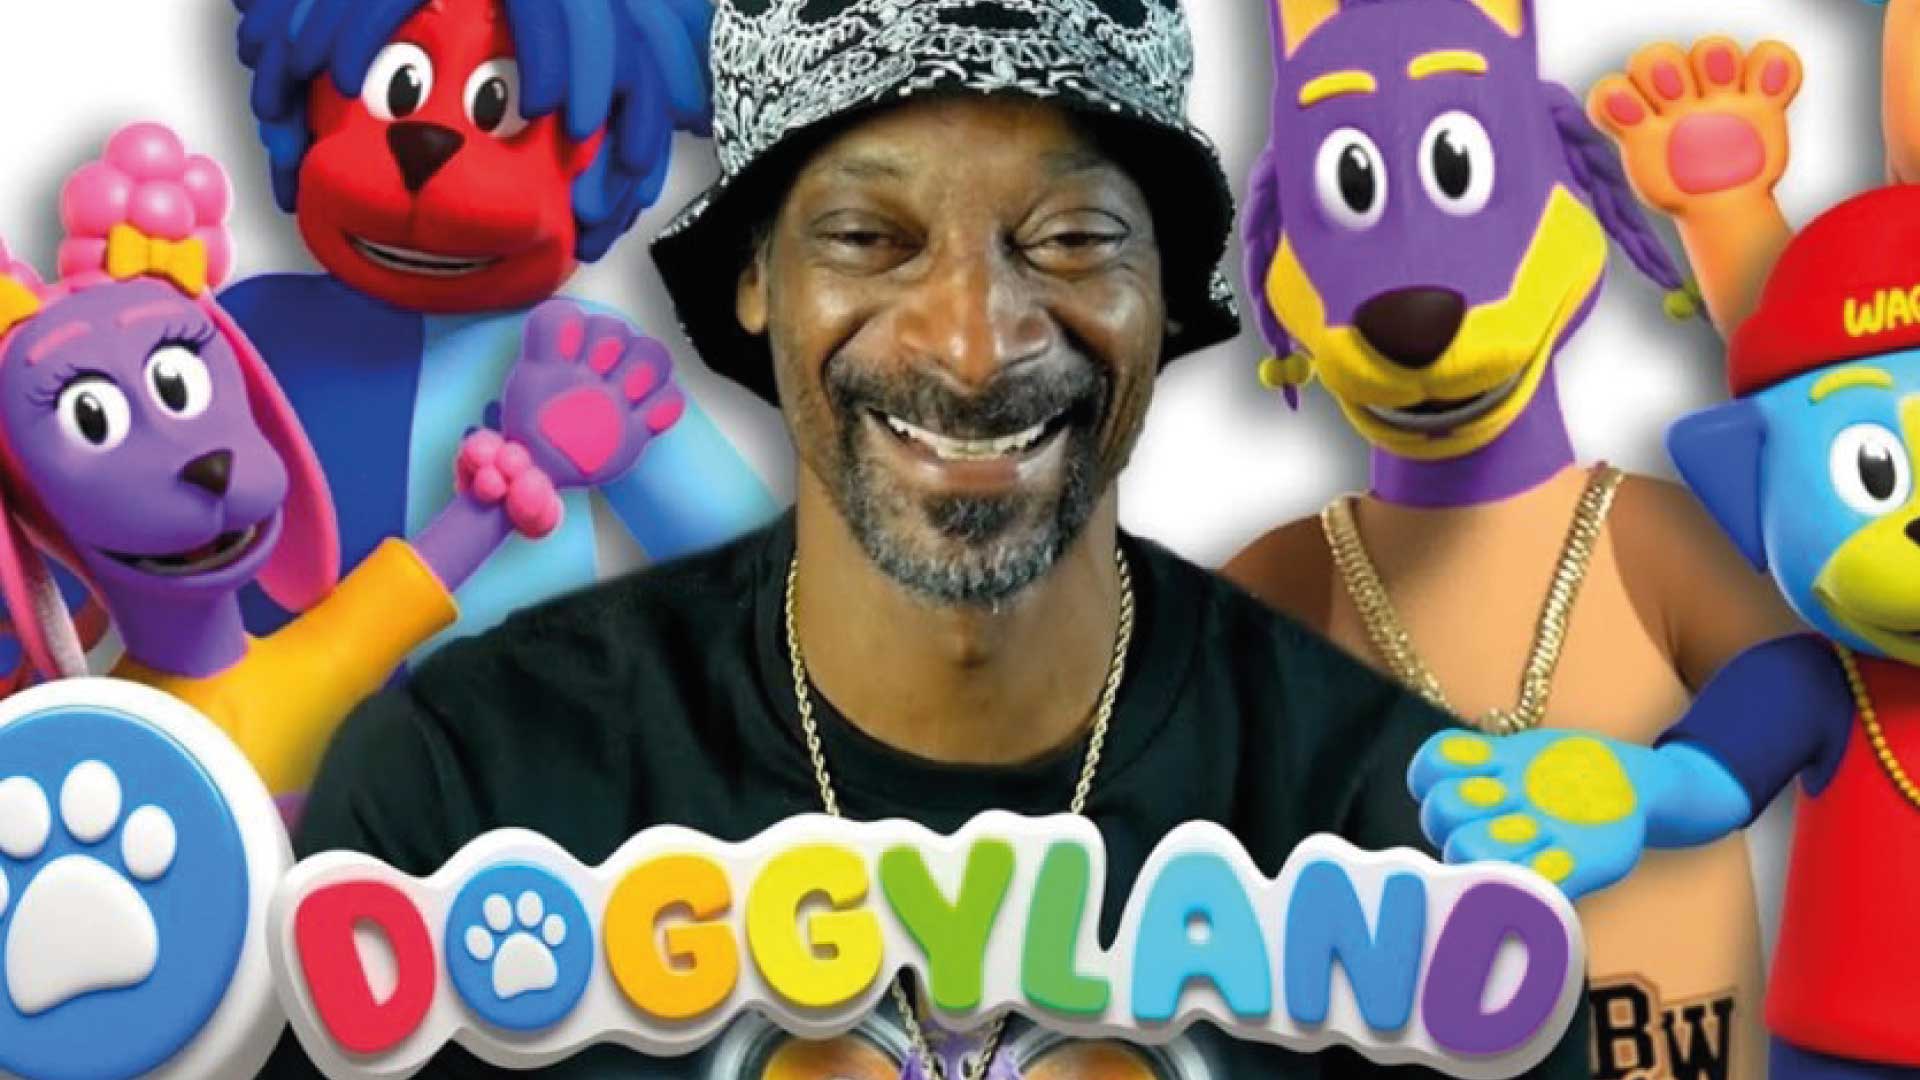 Doggyland: La nueva serie animada para niños de Snoop Dogg